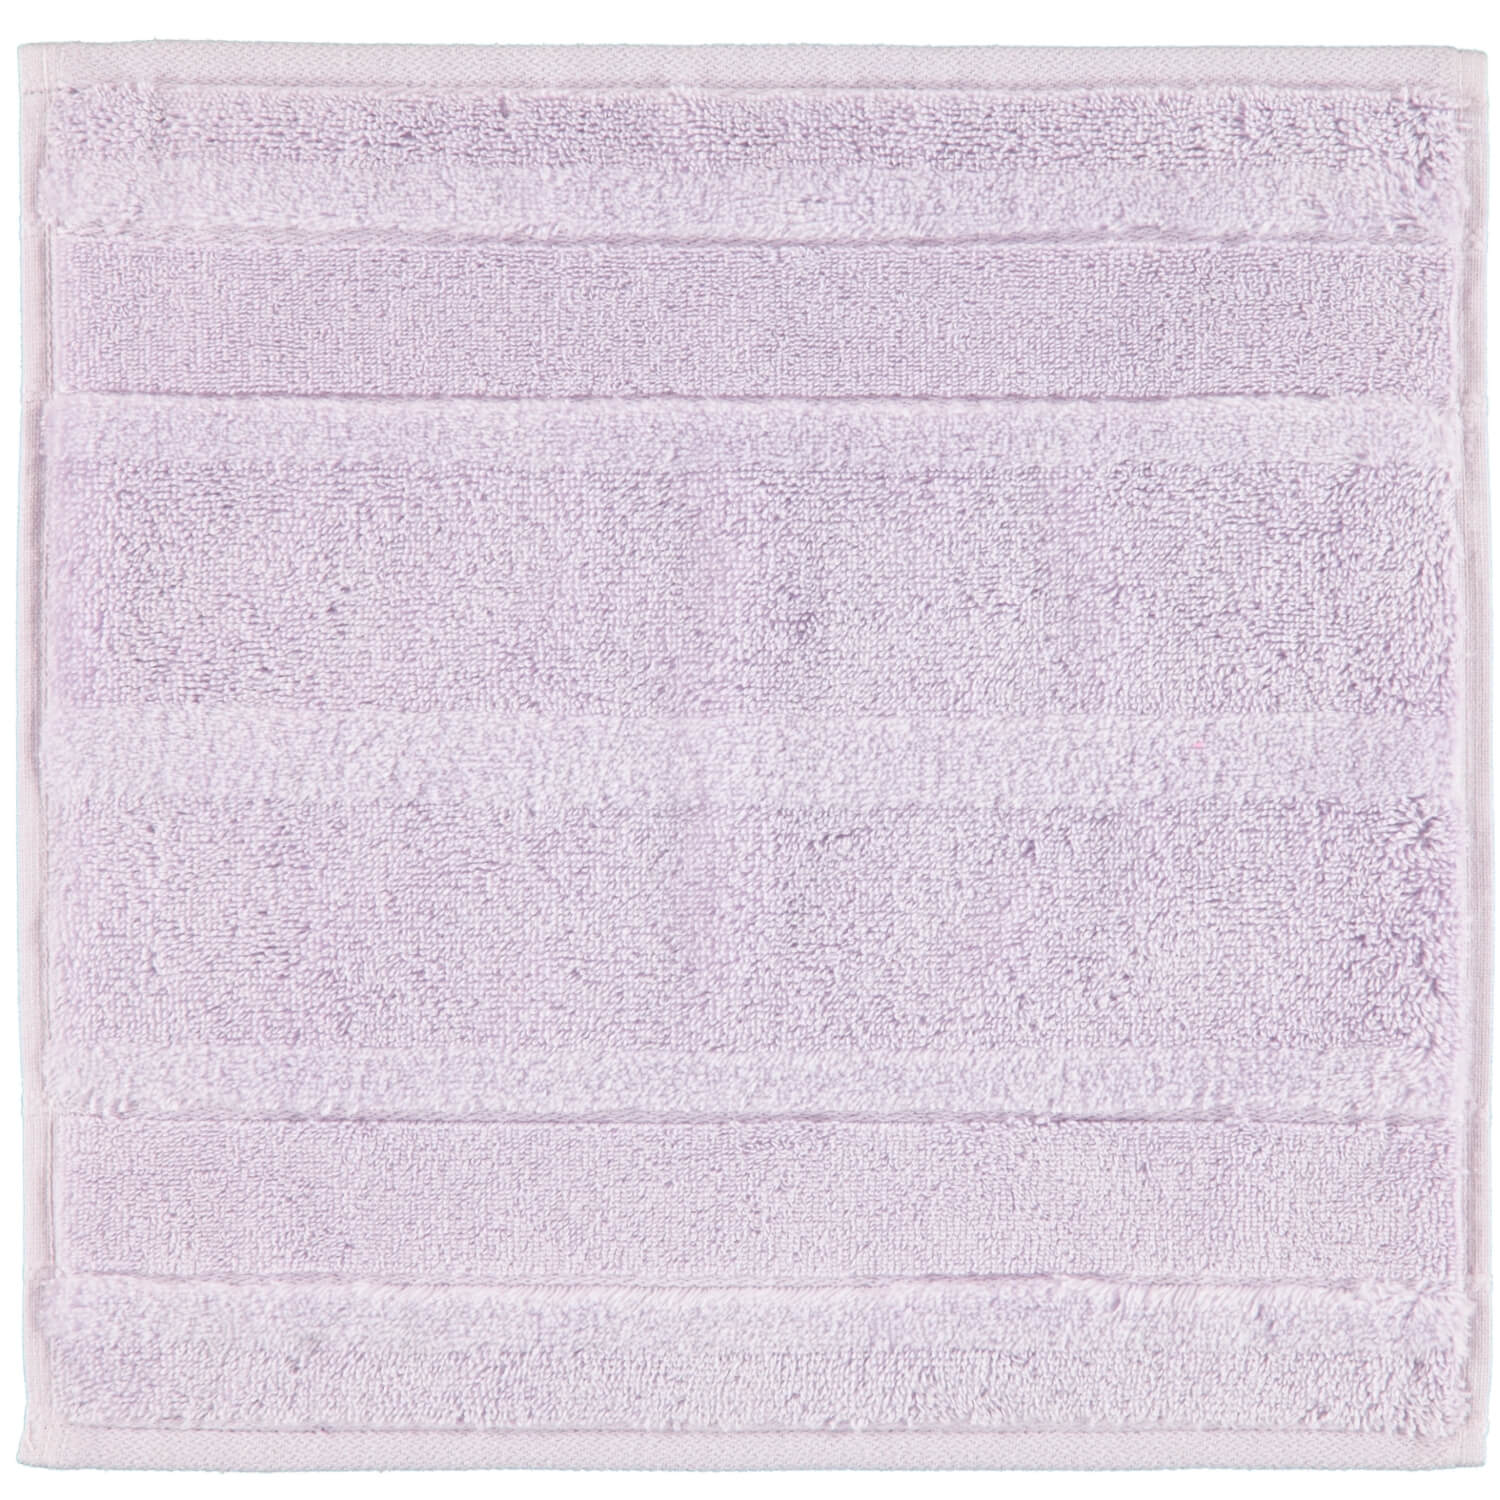 Полотенце из хлопка Noblesse-2 Lavendel (1002-806) ☞ Размер: 30 x 50 см